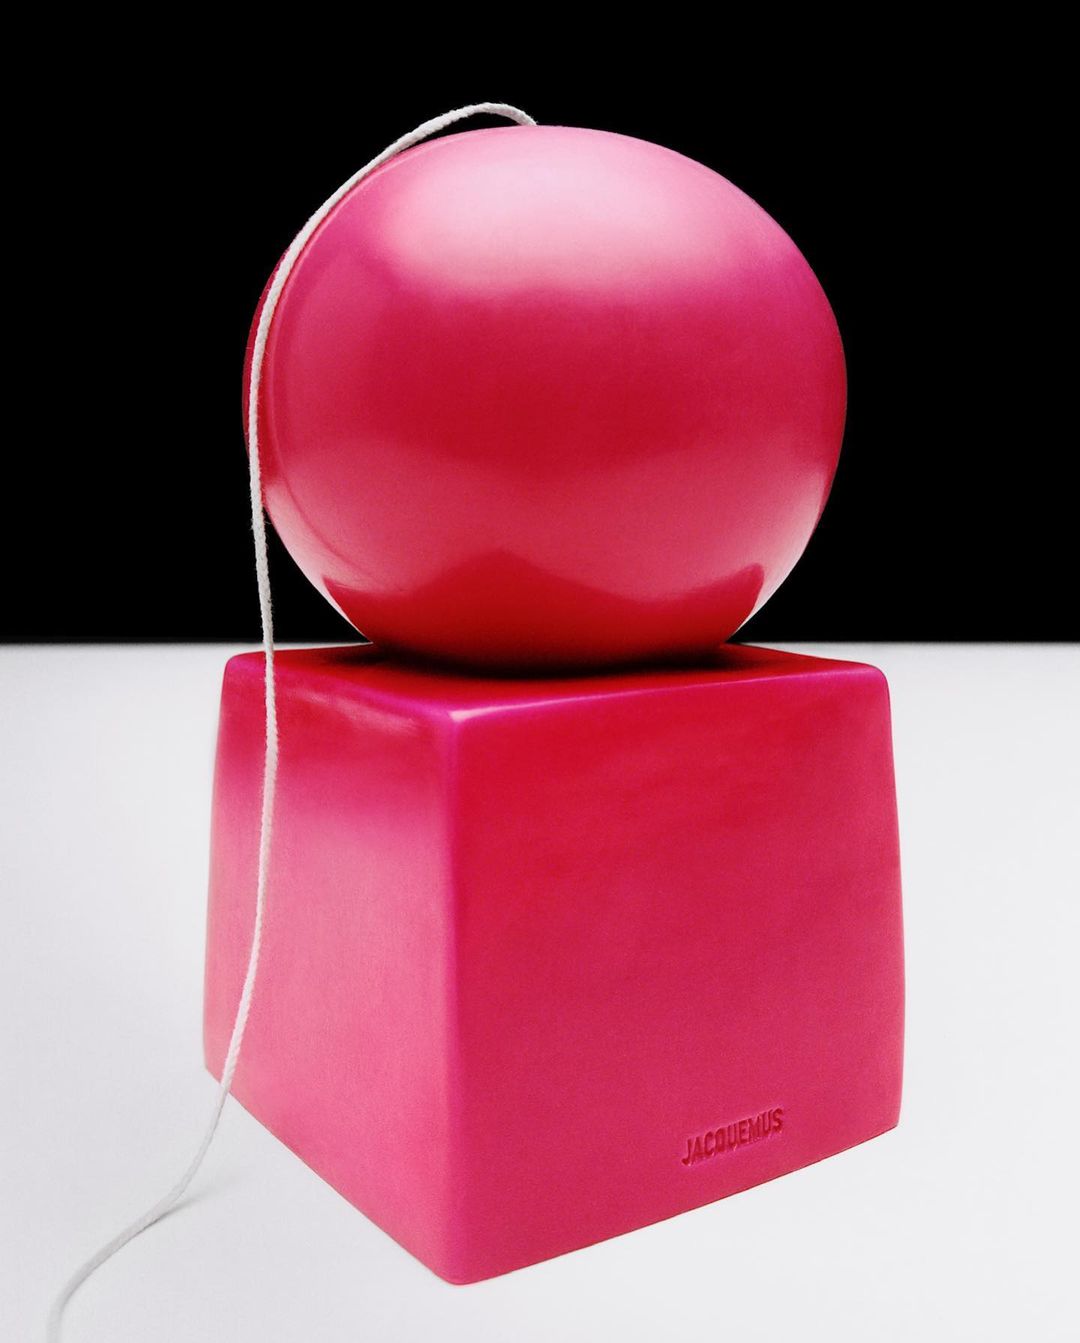 Симон Порт Жакмюс выпустил новую праздничную капсулу в розовых оттенках (фото 4)